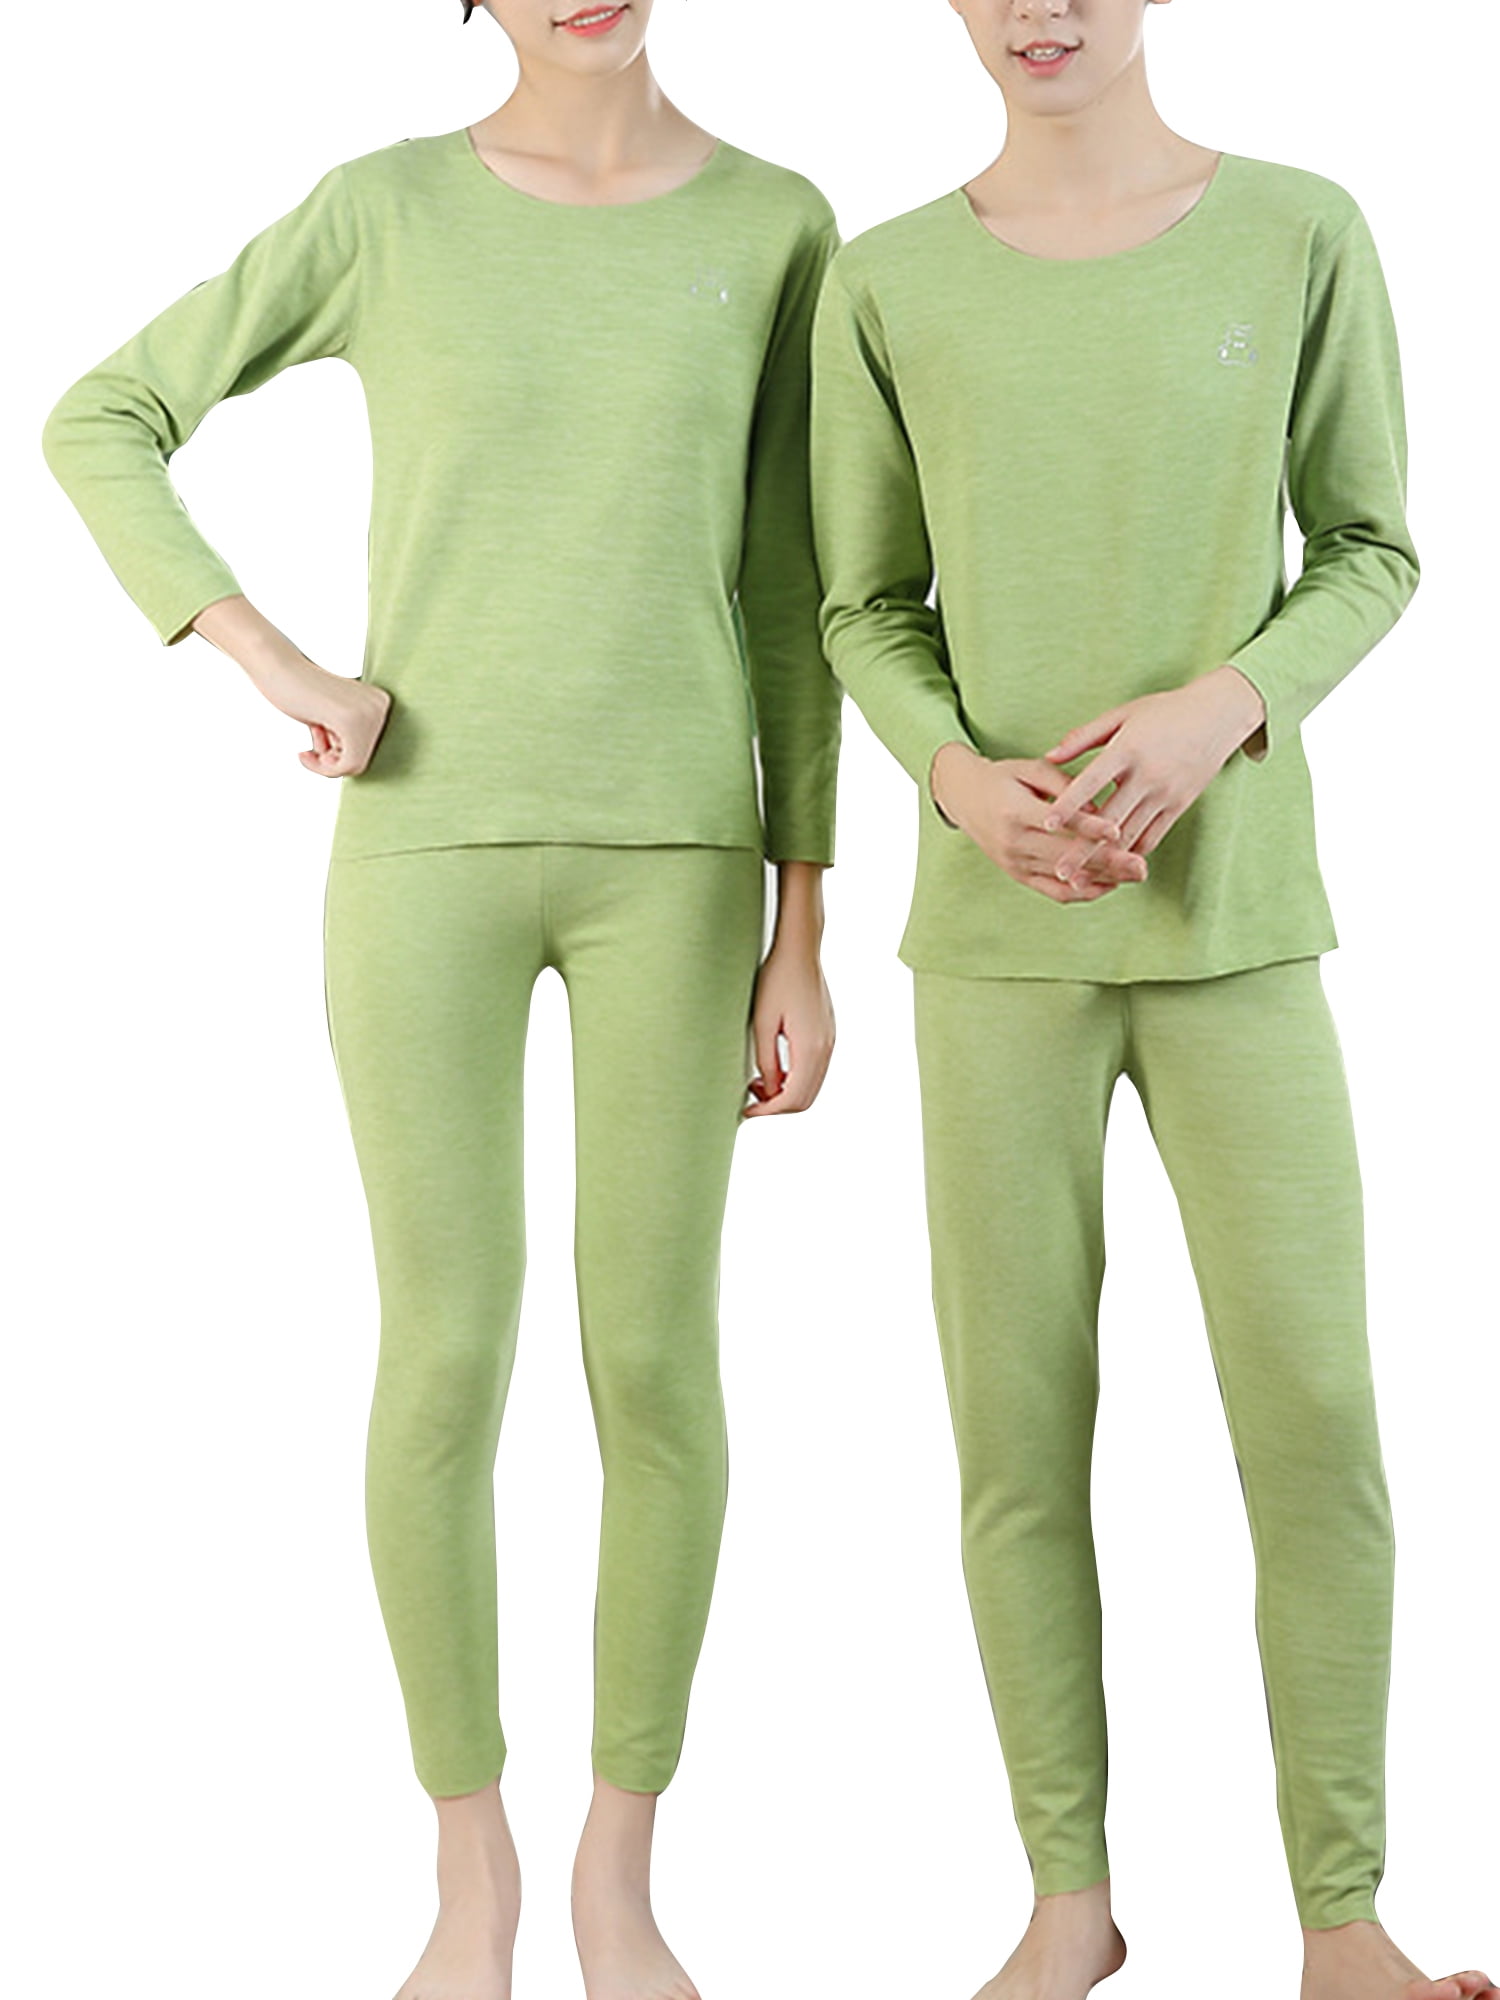 Niuer Men's Soft Thermal Onesie Pajamas